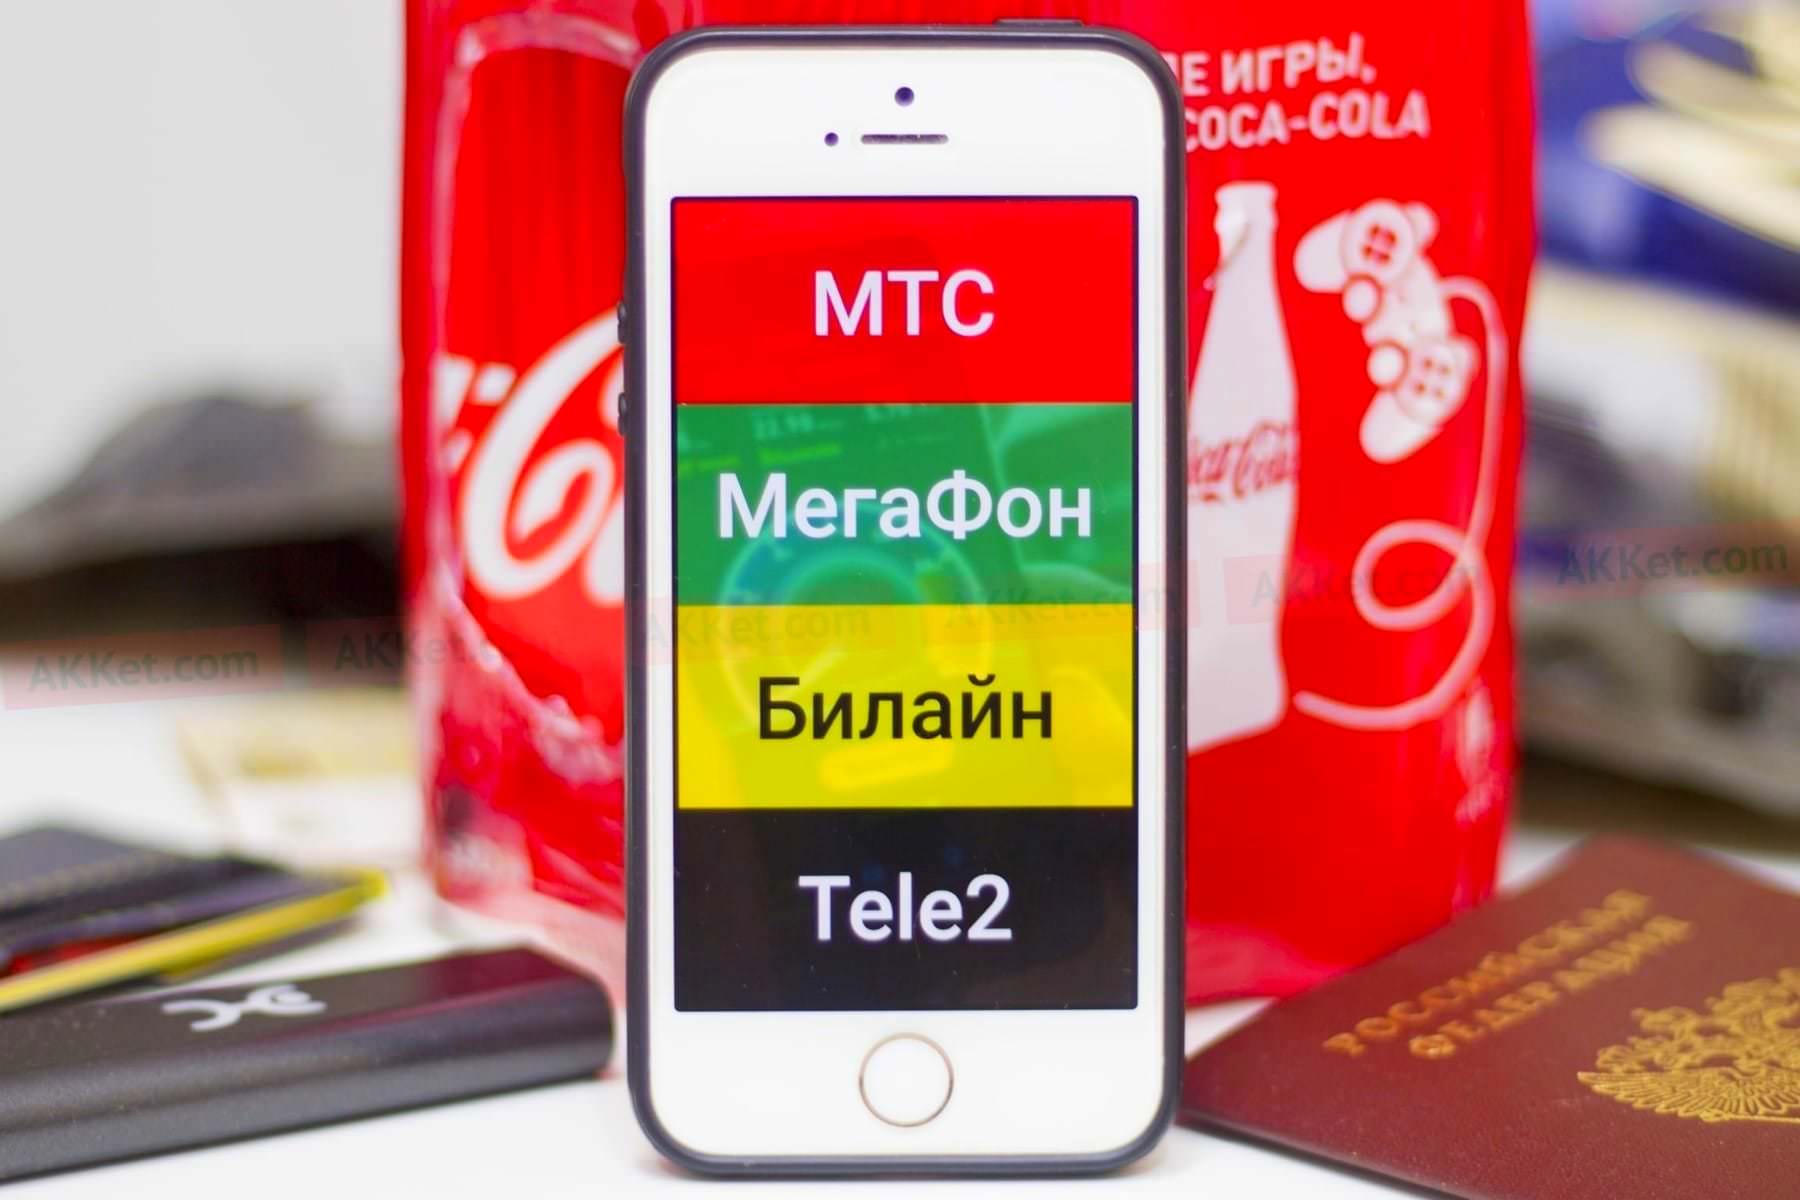 Владимир Путин одним решением ликвидировал сотовых операторов «МТС», «МегаФон», «Билайн» и Tele2